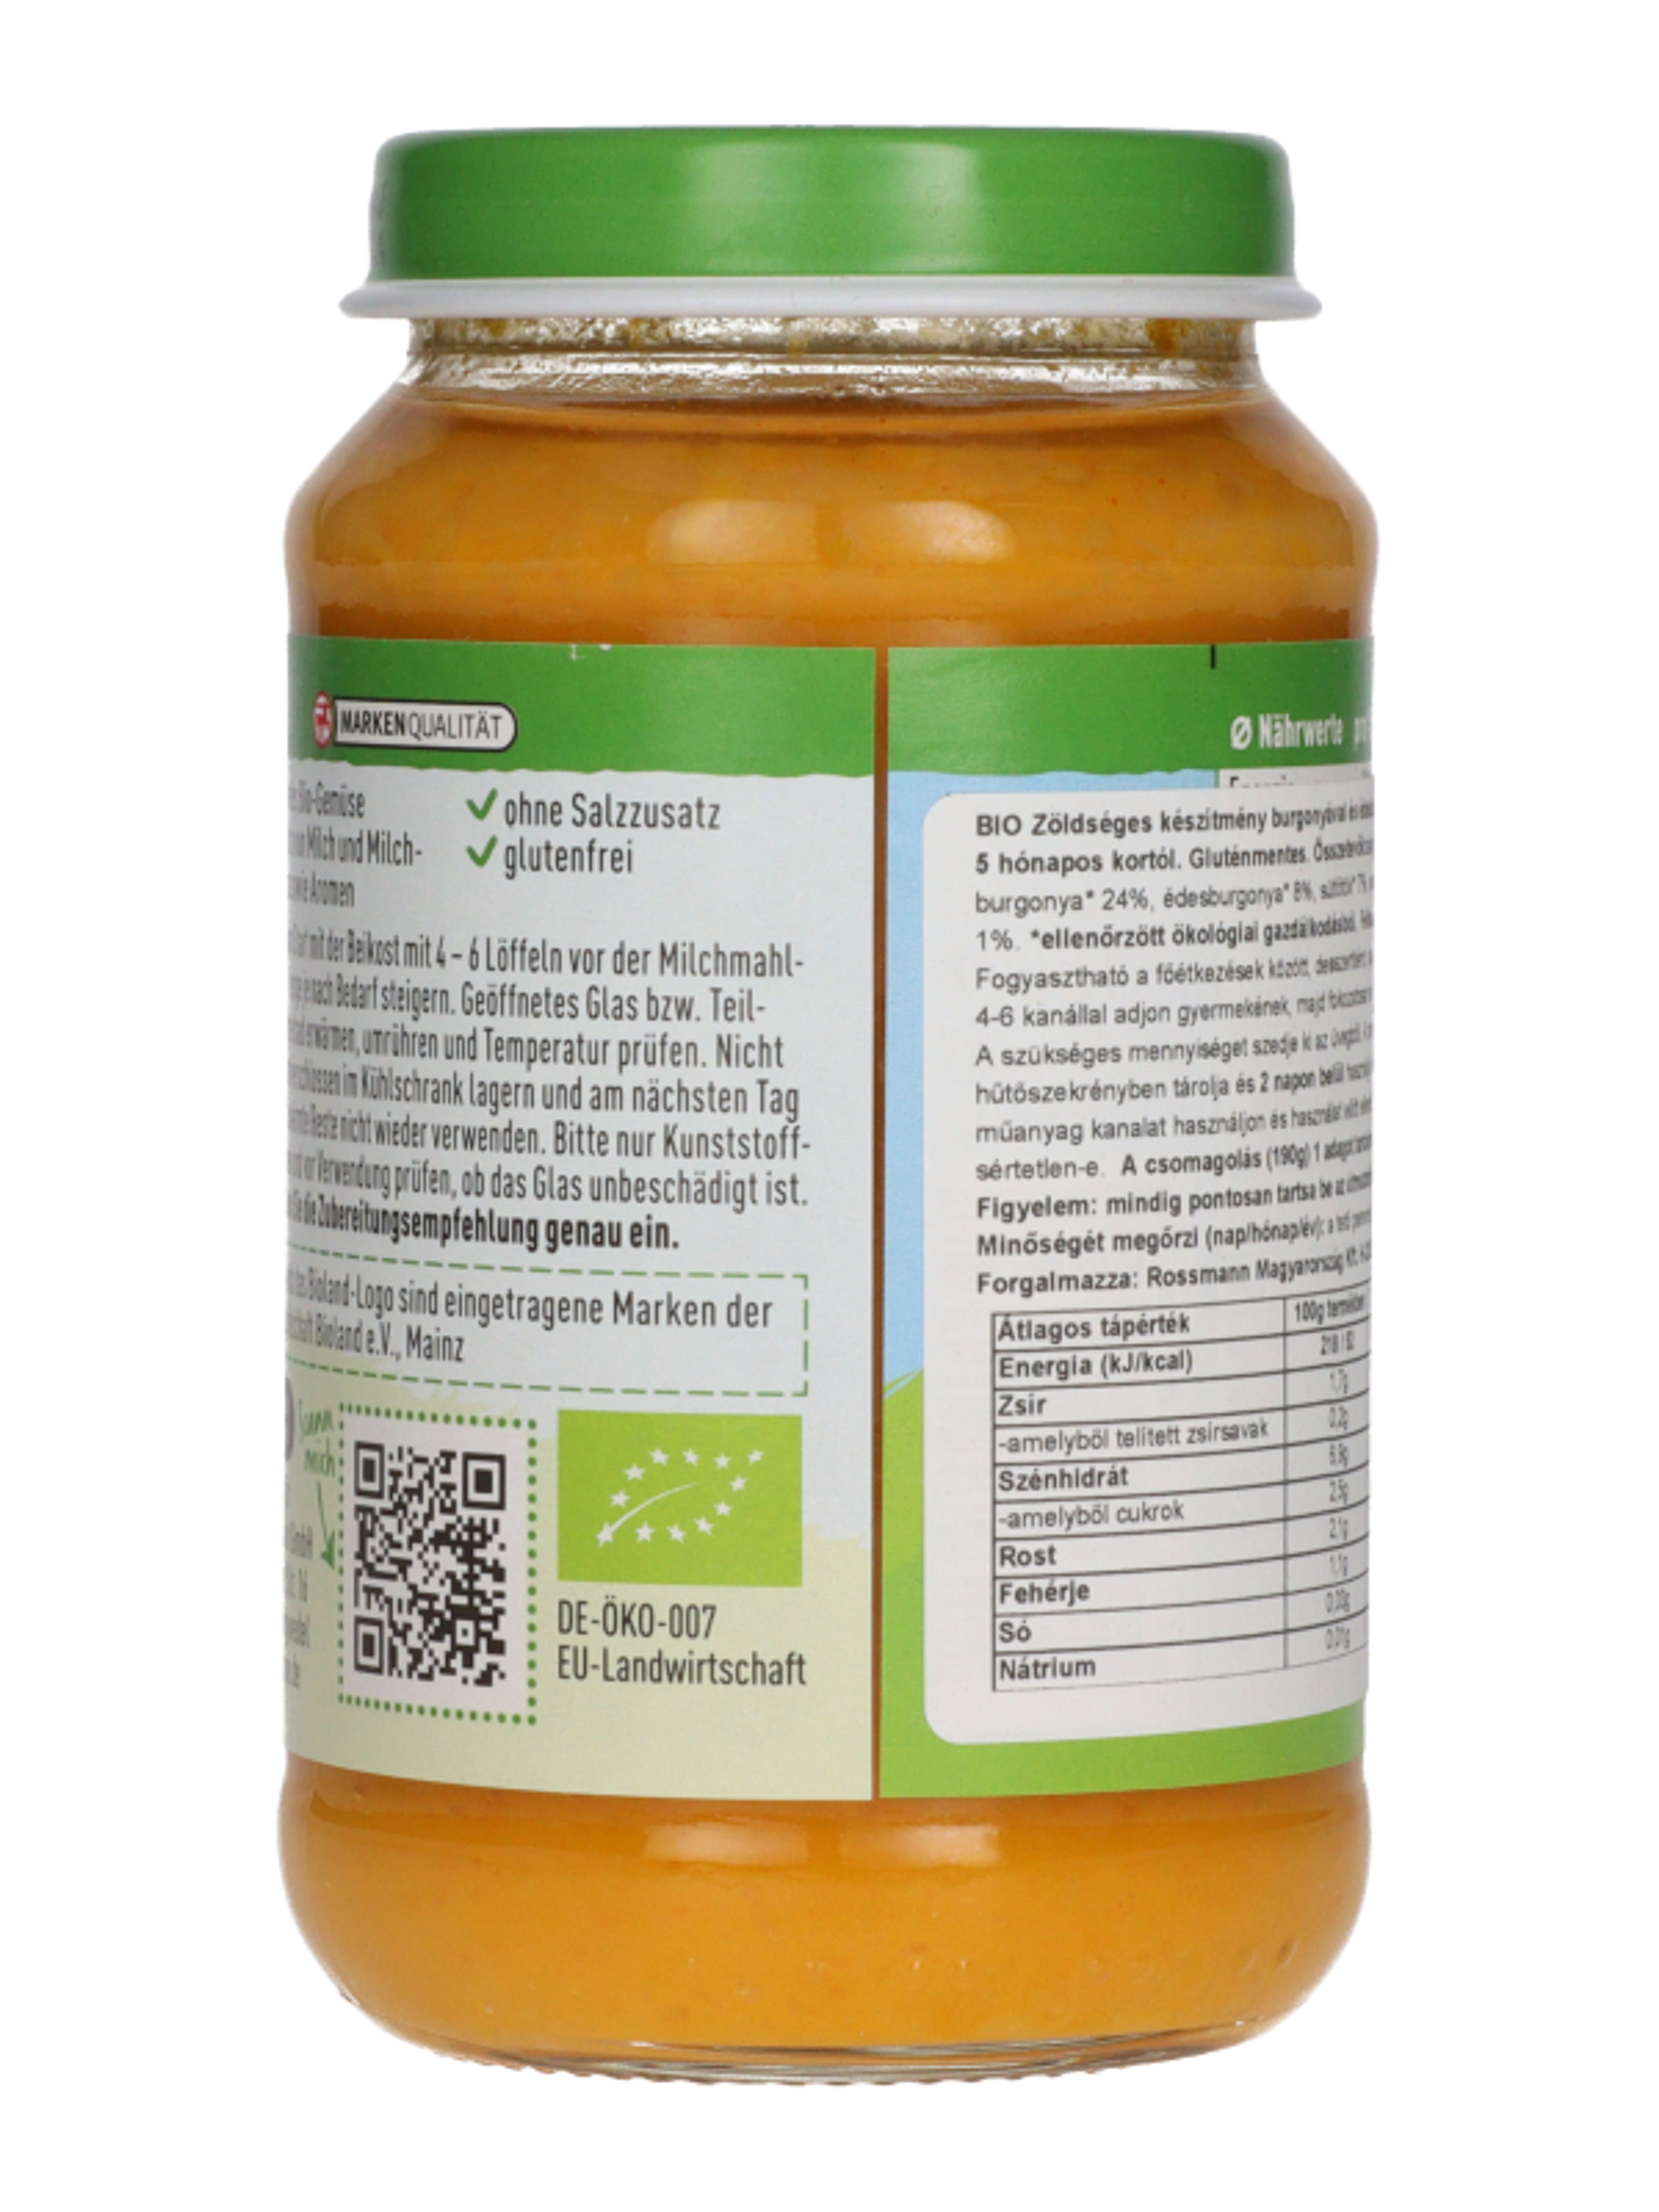 Ener-bio zöldséges készítmény burgonyával és édesburgonyával 5 hónapos kortól - 190 g-4